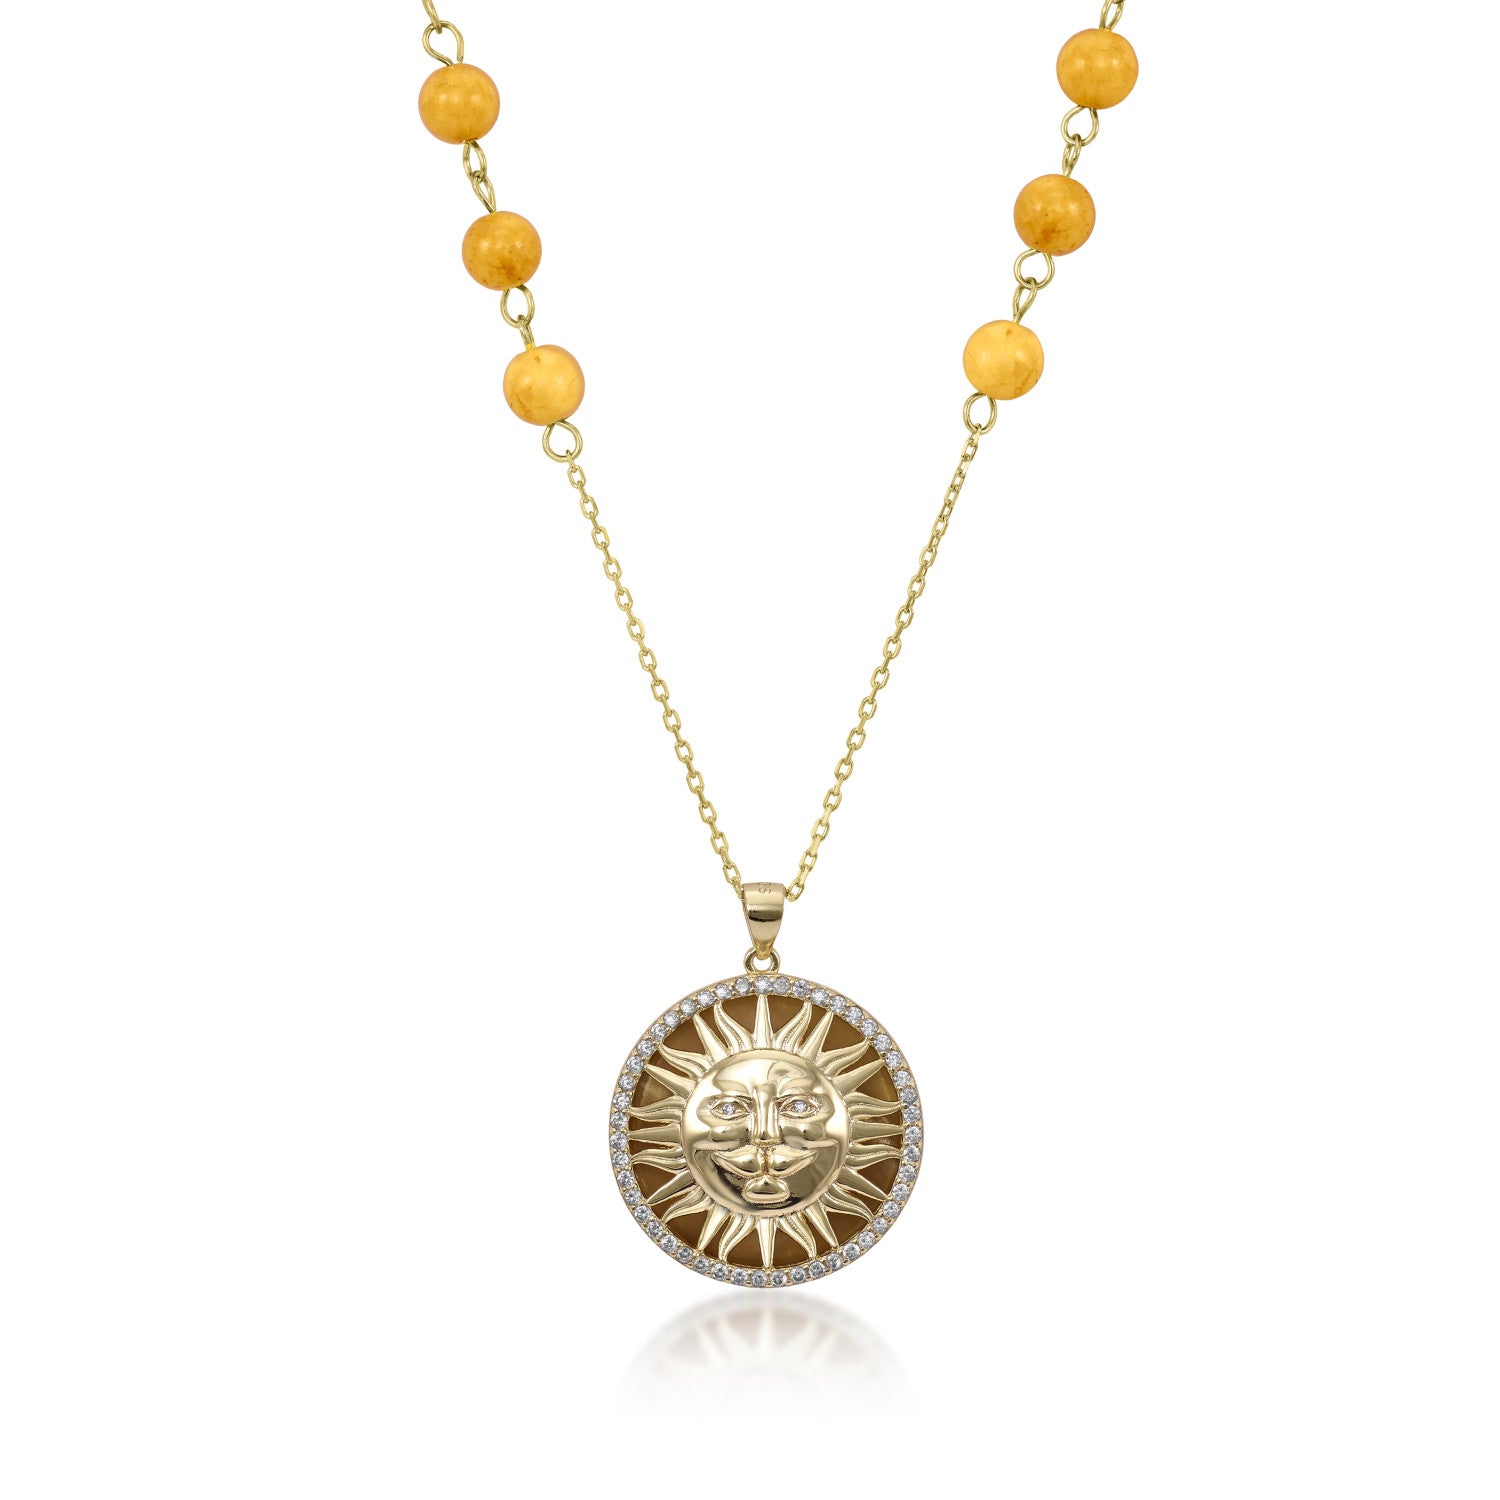 Collar medalla de plata con motivo de sol de plata lisa  piedras semipreciosas y esmalte naranja